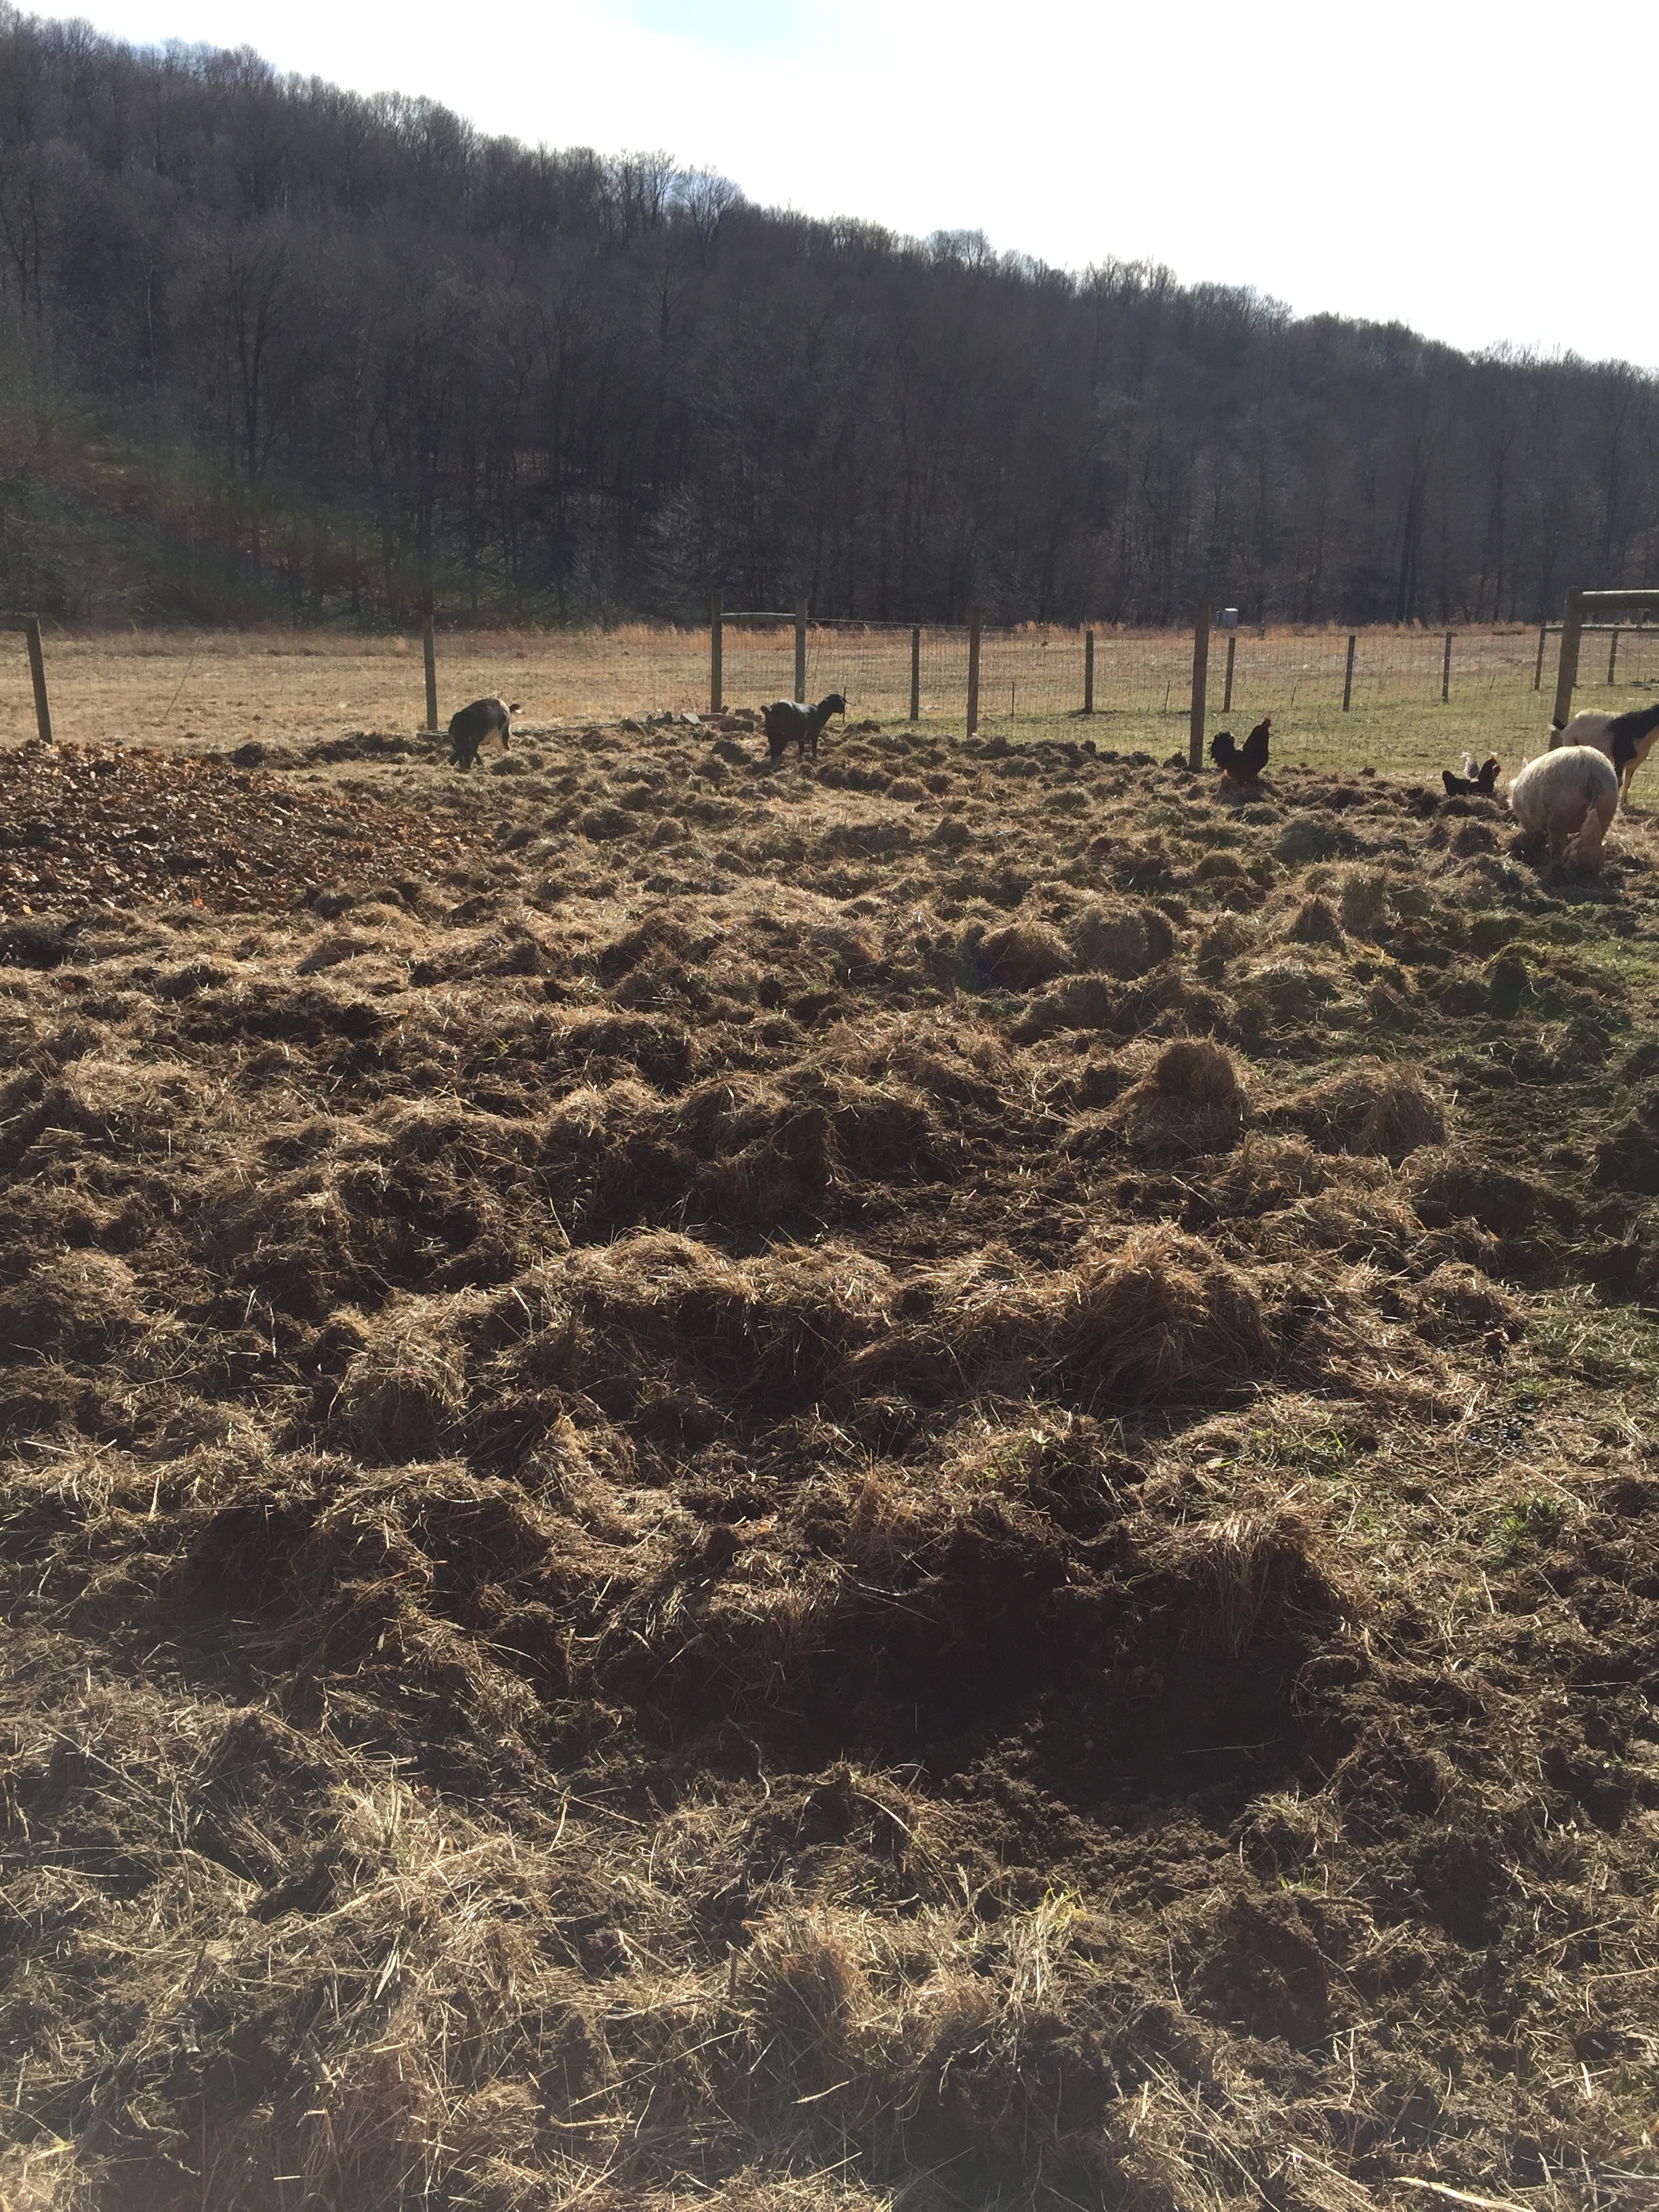 Animals in the pasture space preparing soil...